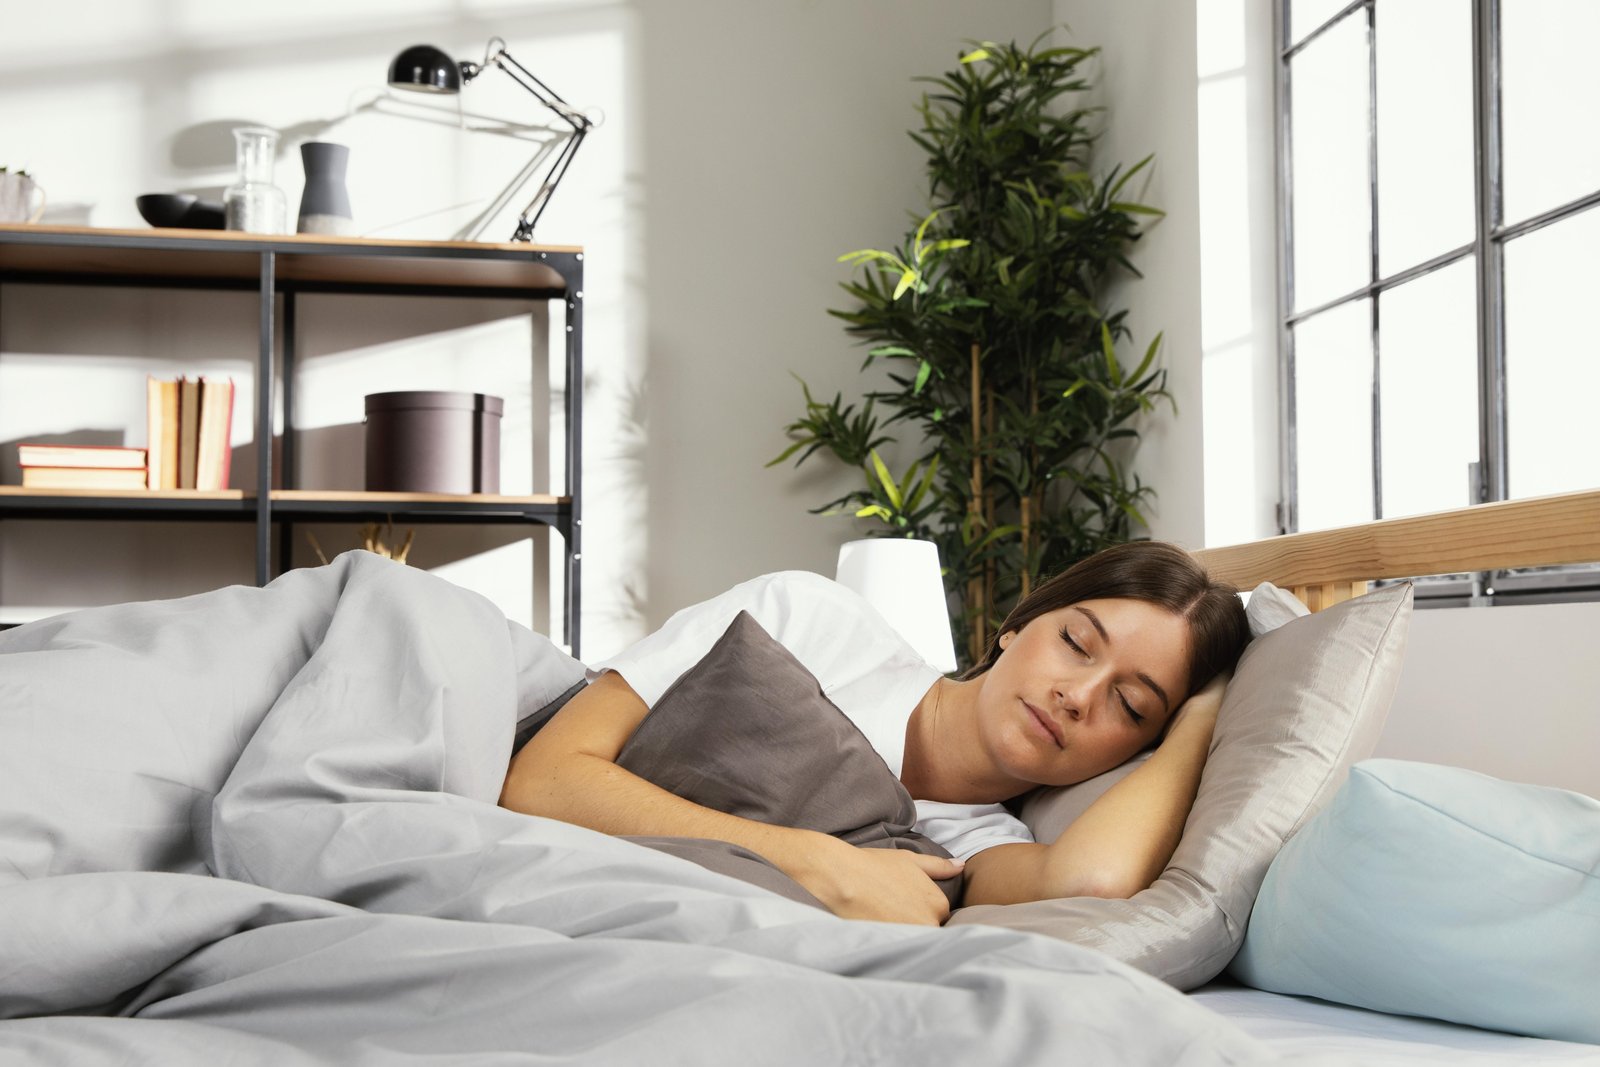 Better Sleep May Help People Overcome Feelings Of Loneliness: Study